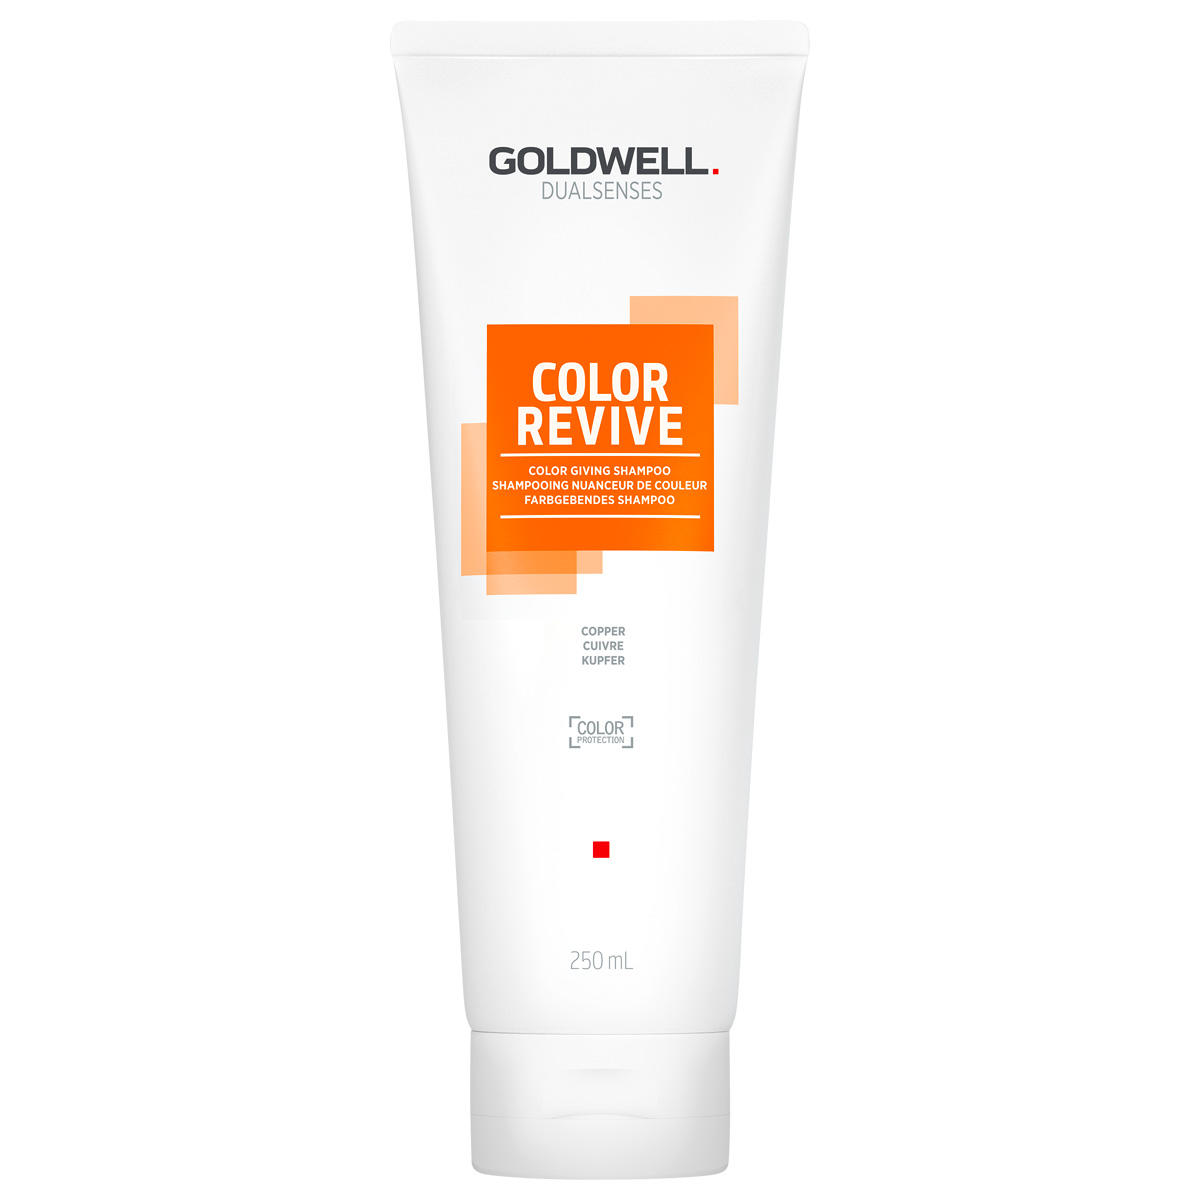 Goldwell Dualsenses Color Revive Farbgebendes Shampoo Kupfer 250 ml - 1